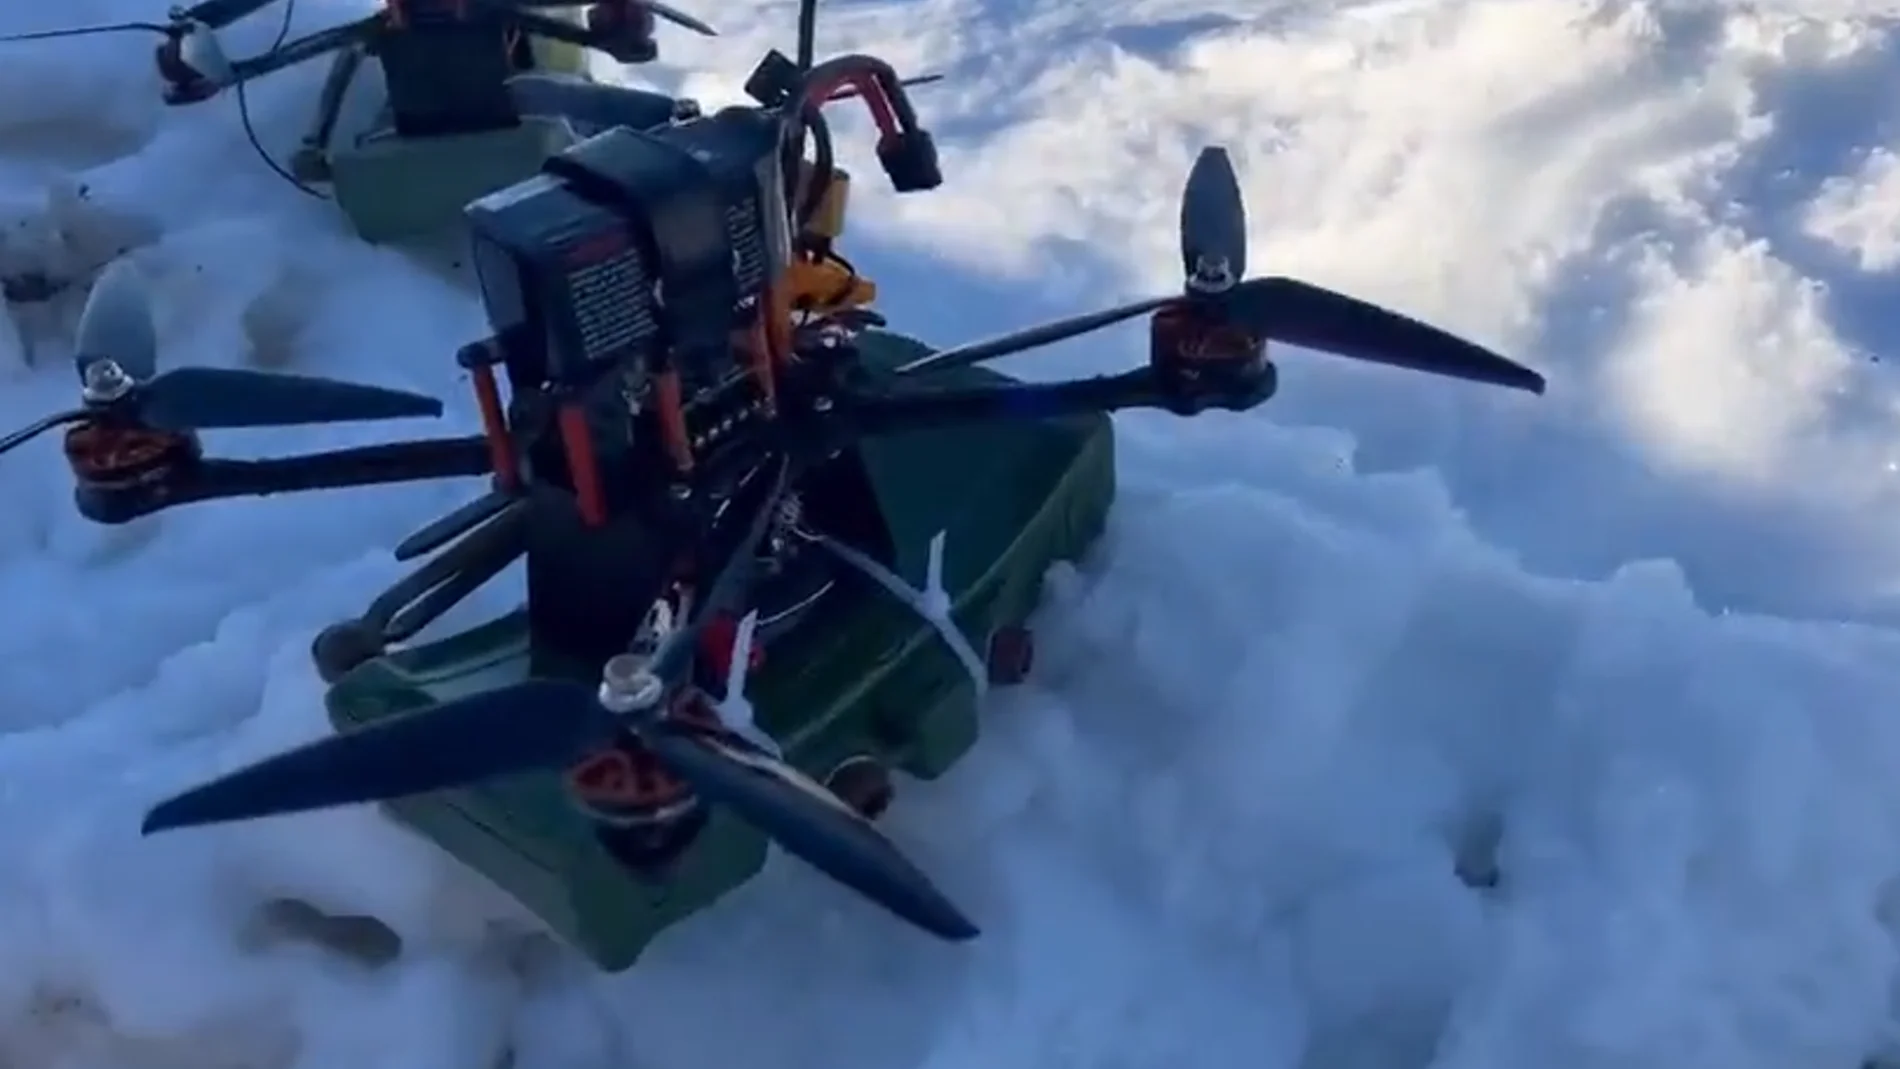 Así son las “claymore voladoras” del Ejército ruso: “picadoras de carne antipersona” montadas en drones.